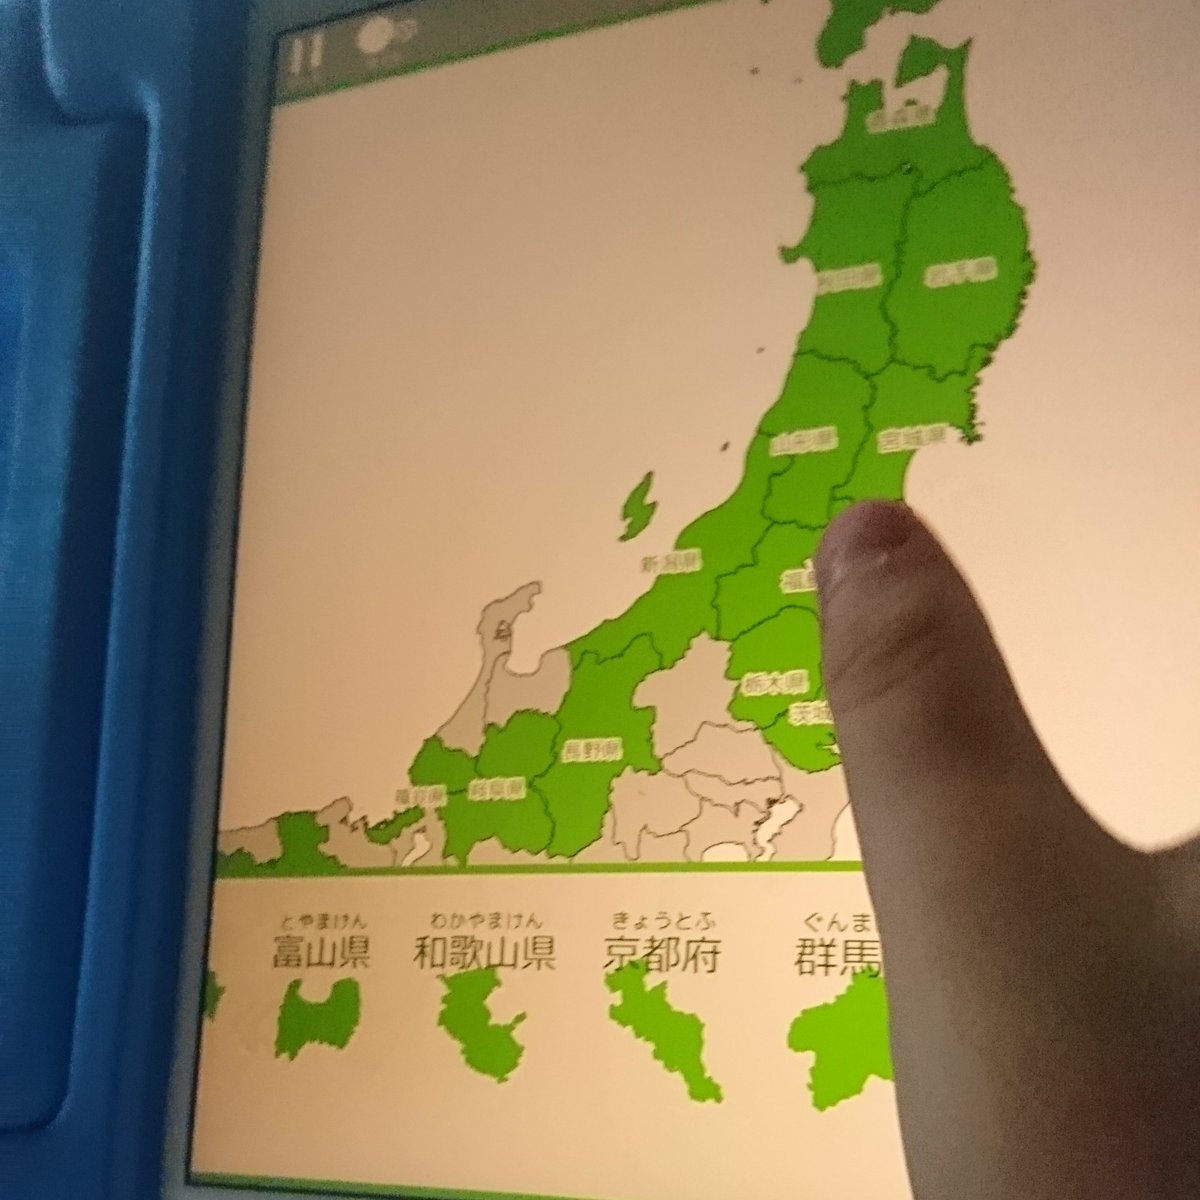 デジタルジーン 夫婦でアプリ開発中 あそんでまなべる 日本地図パズル 遊んでいただきありがとうございます T Co Lbiyimenck